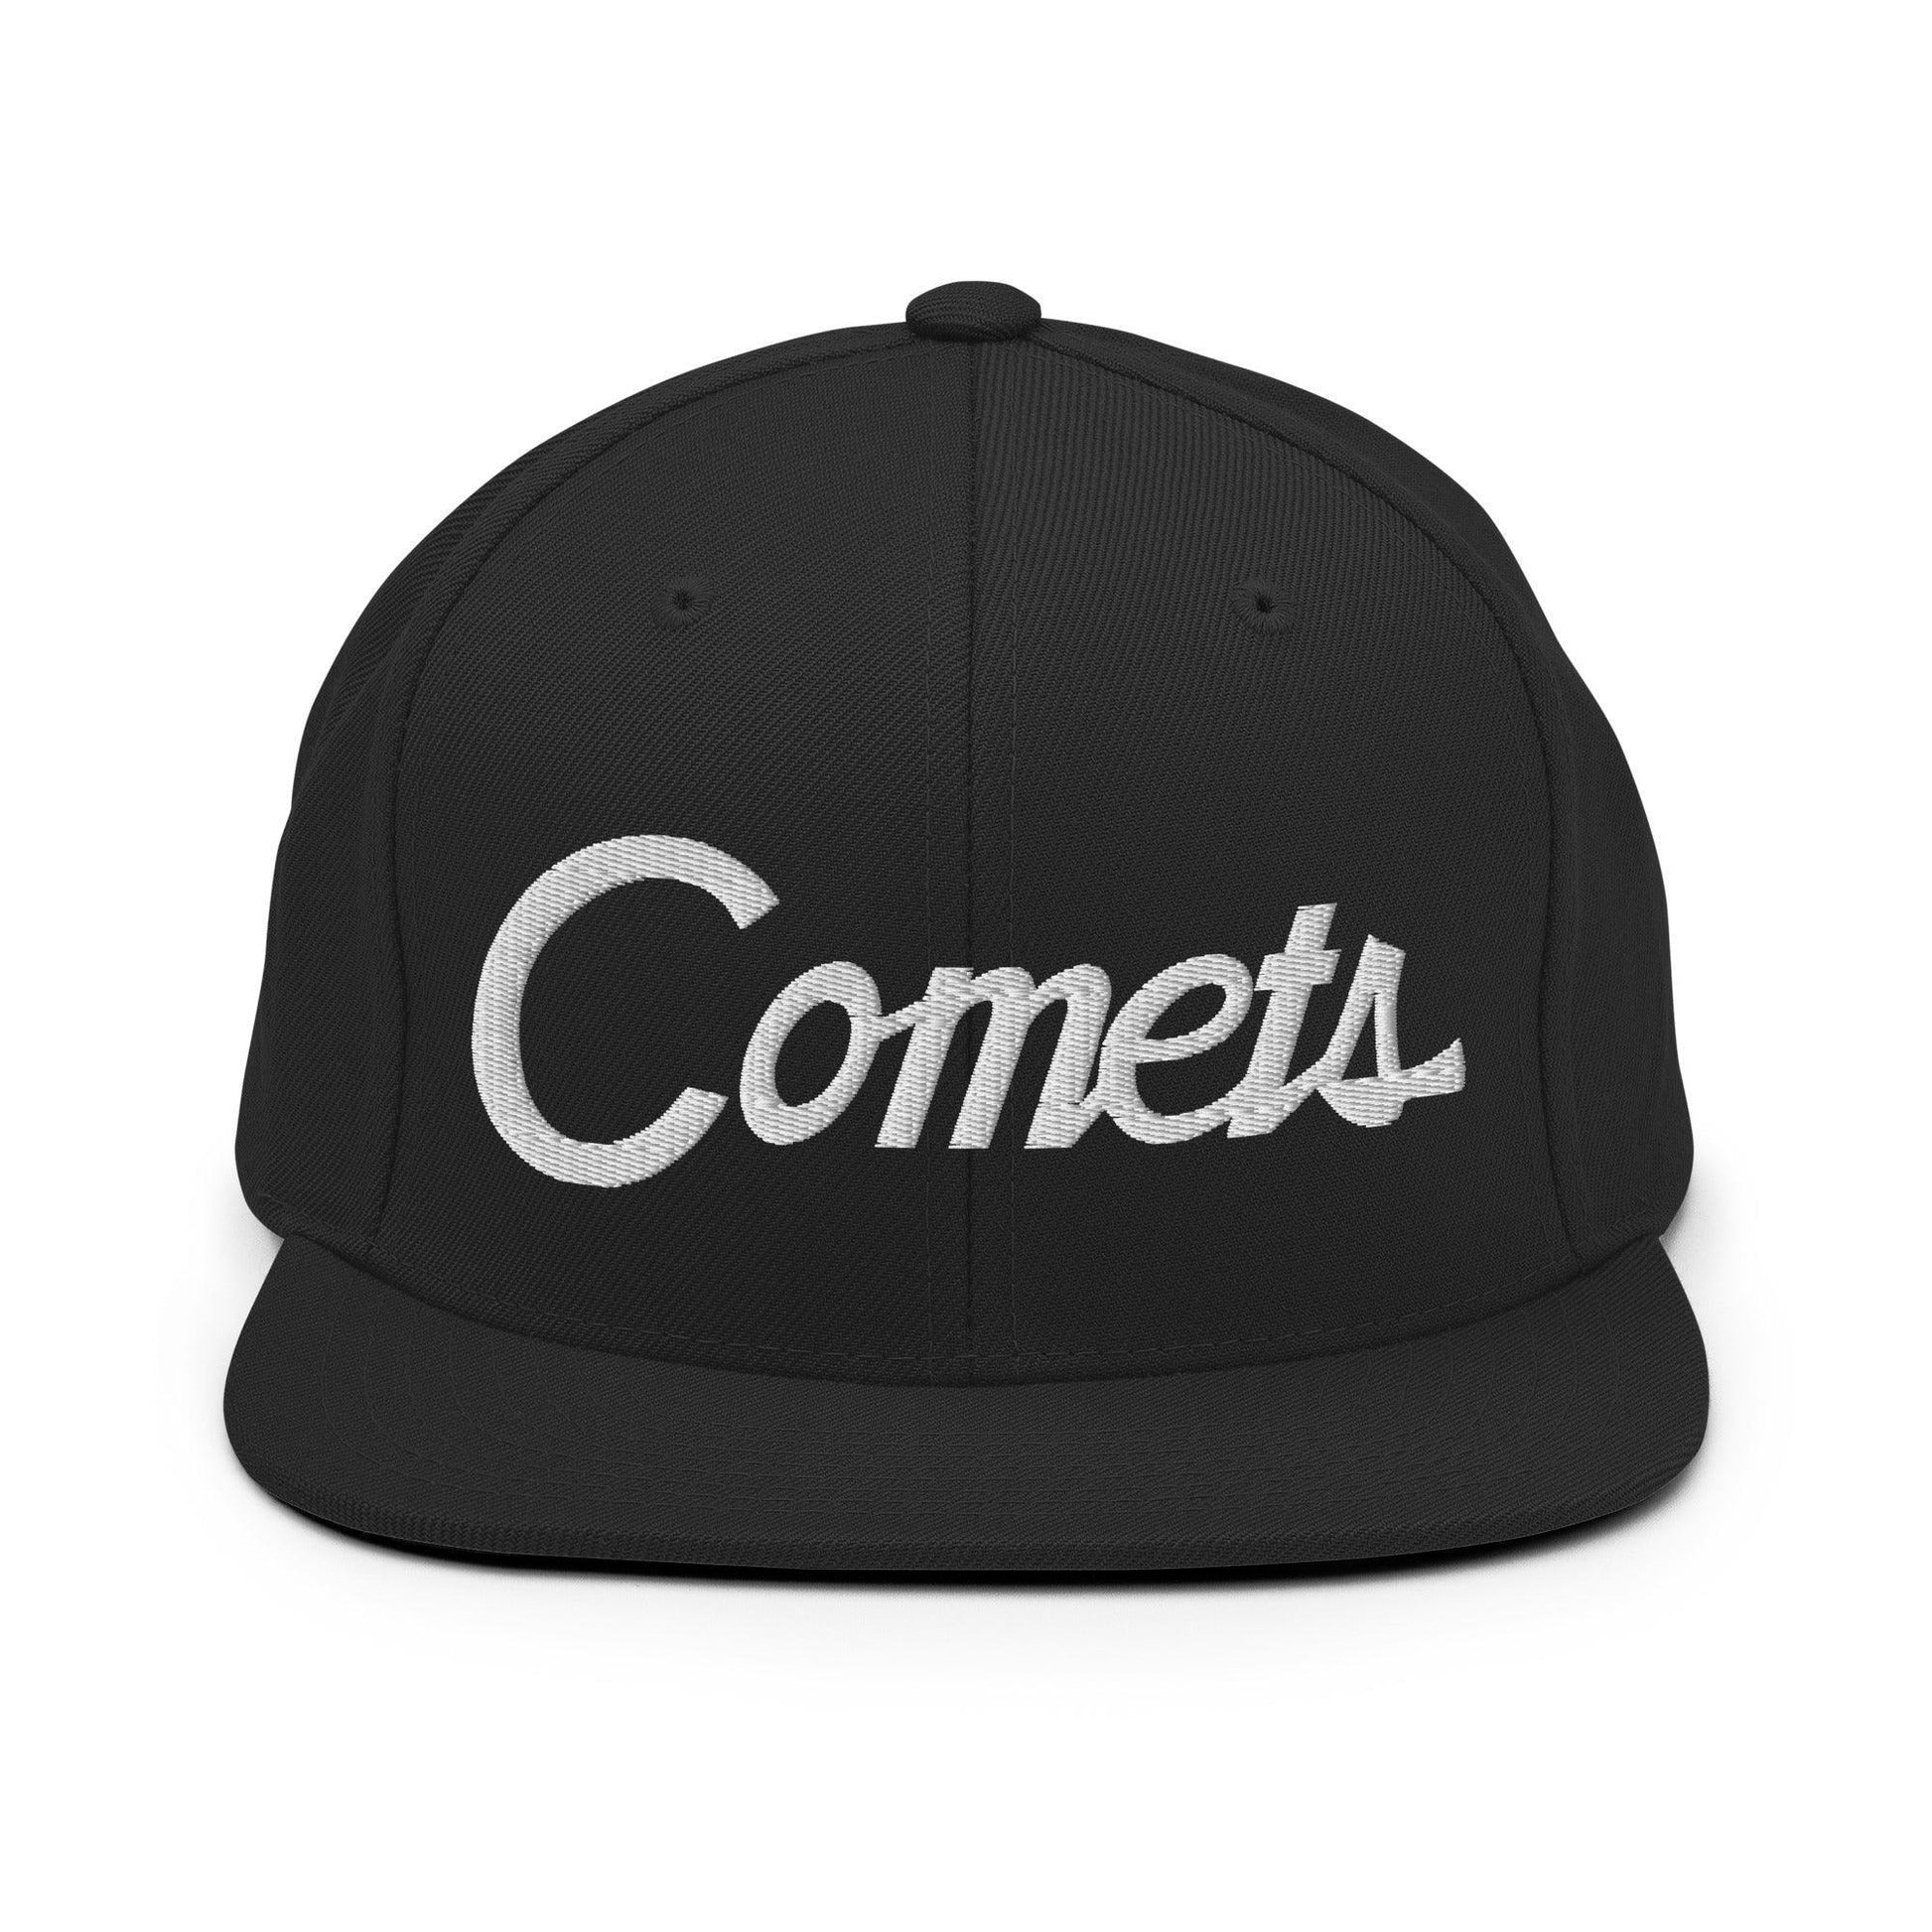 Comets School Mascot Script Snapback Hat Black